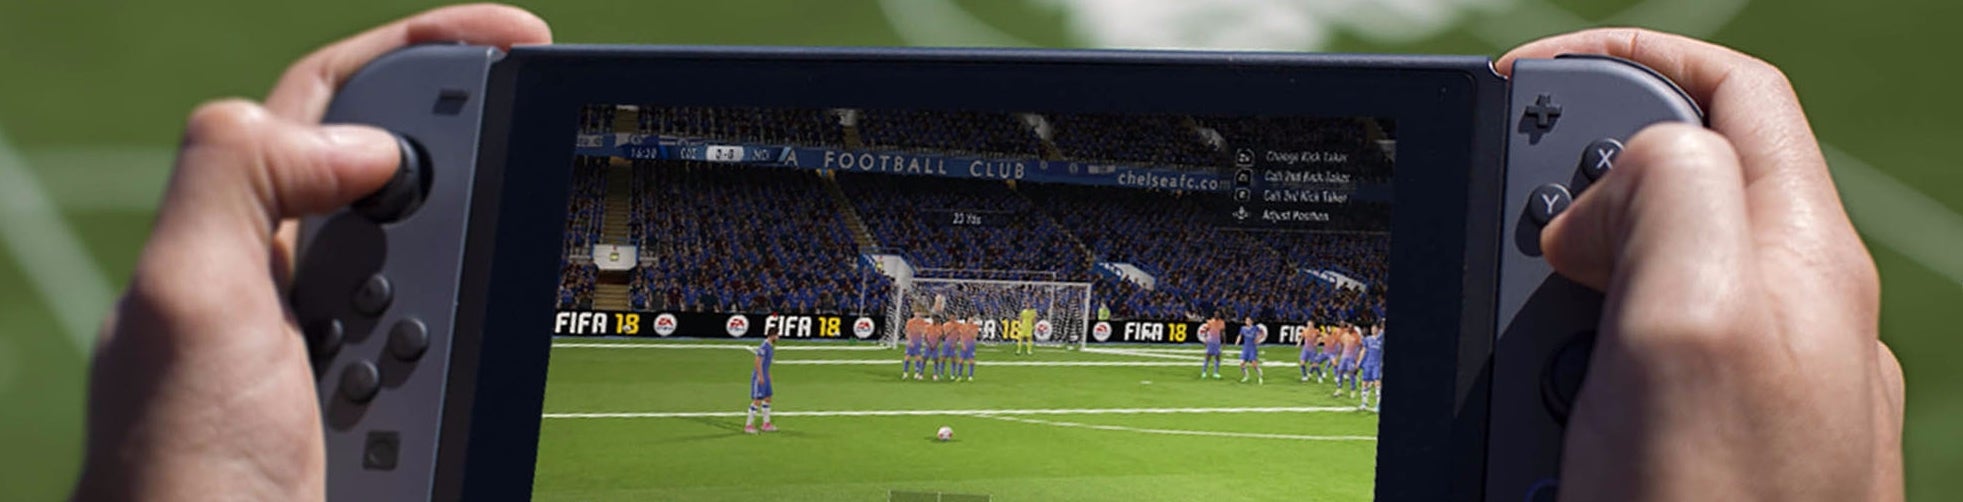 Imagem para Digital Foundry - FIFA 18 Switch: personalizado ou conversão Xbox 360 melhorada?